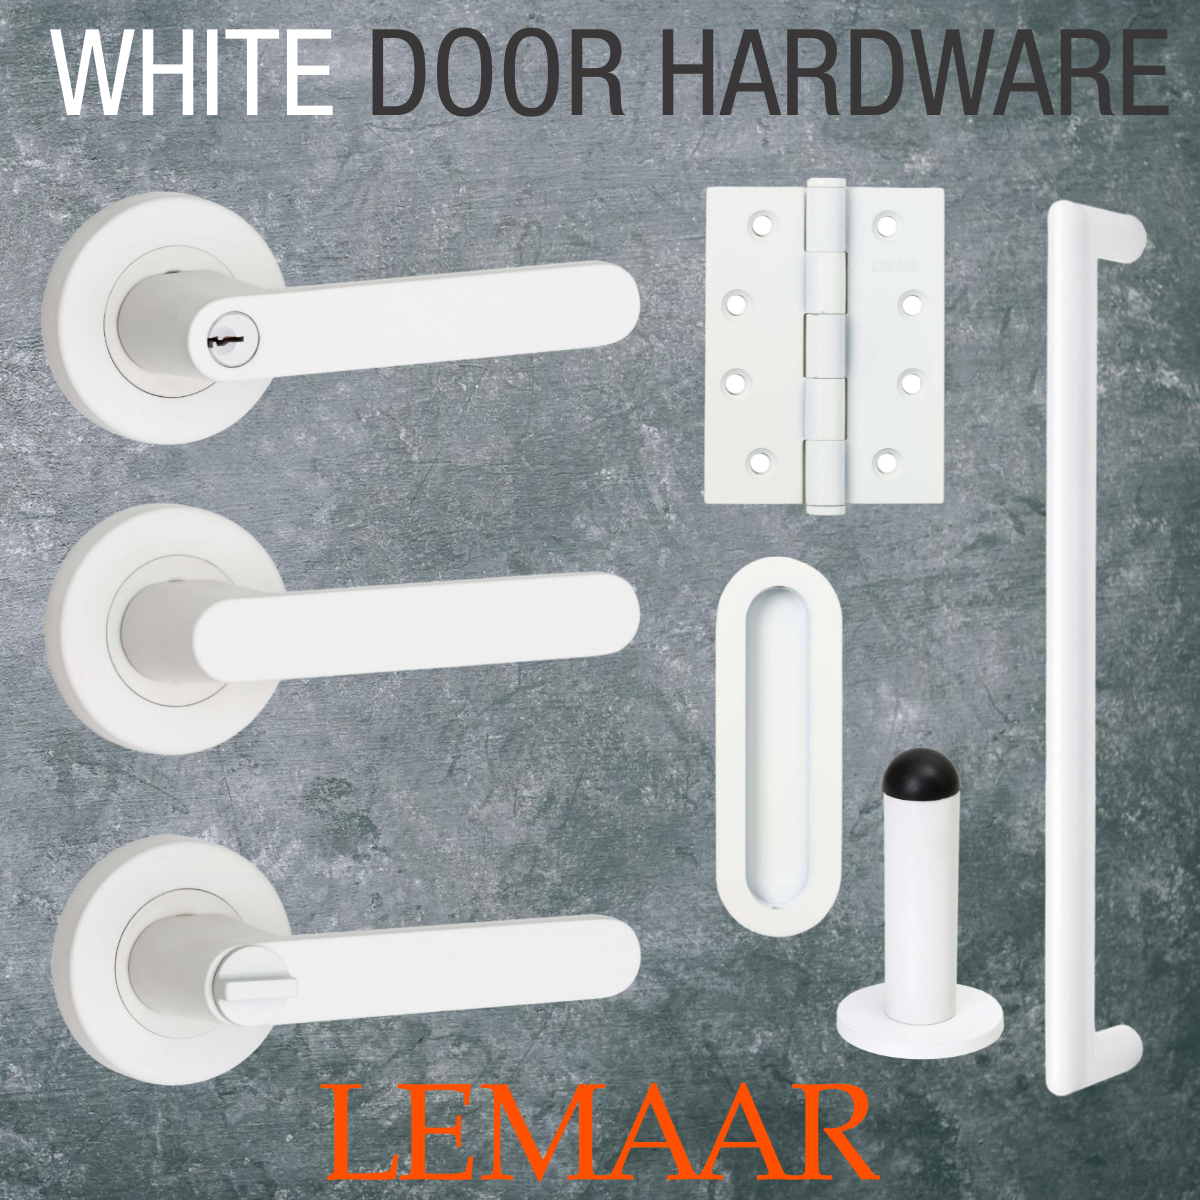 white door hardware white handle white deadbolt white door pull white hinge